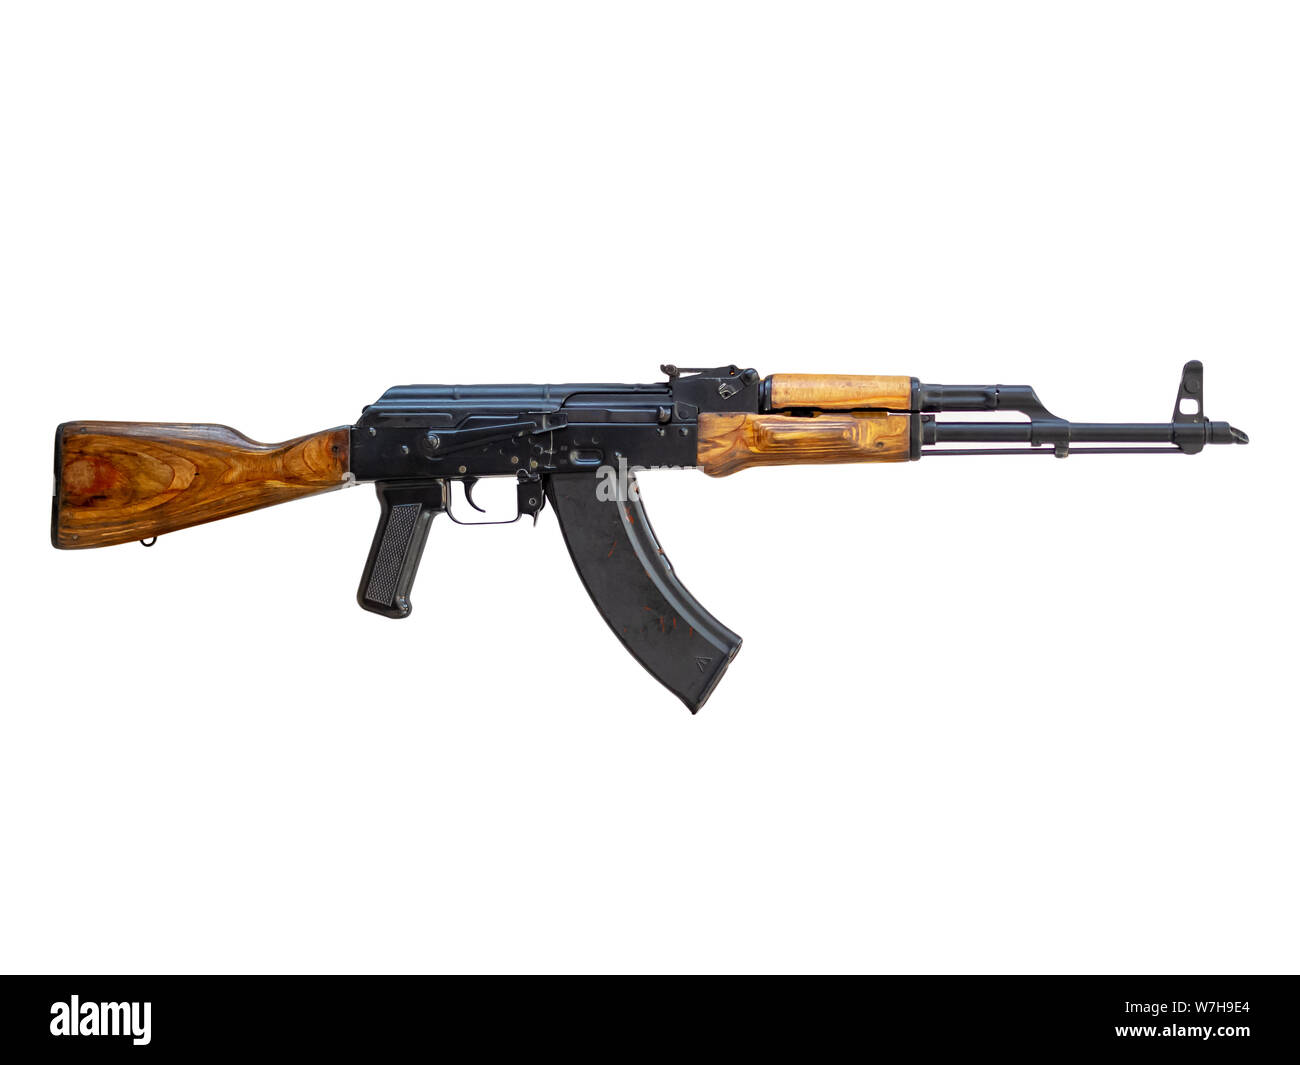 1959 7.62mm AKM (Modernized Kalashnikov Automatic Rifle) isolated on white background Stock Photo